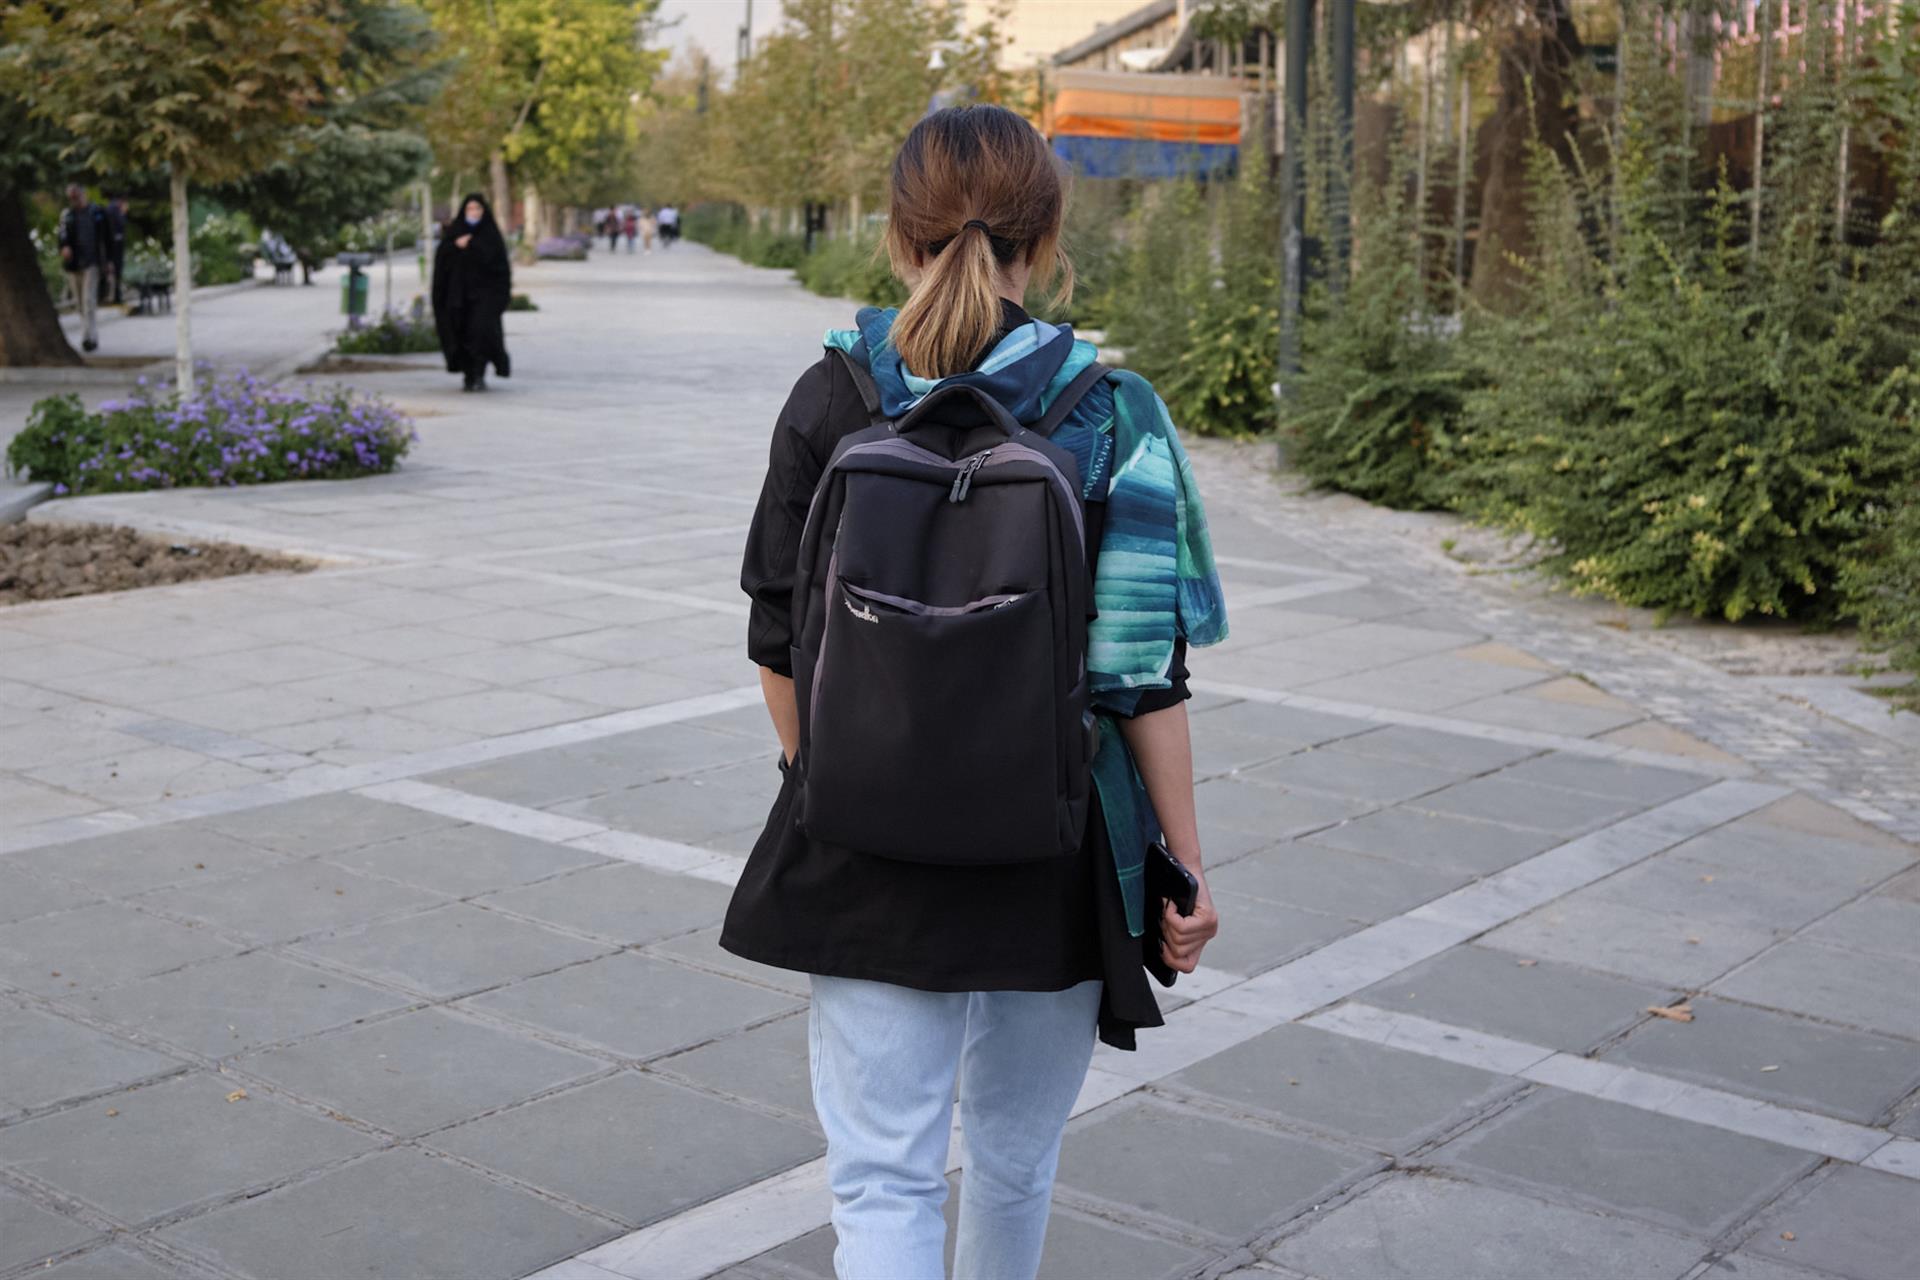 El revolucionario acto de caminar por la calle sin velo en Irán